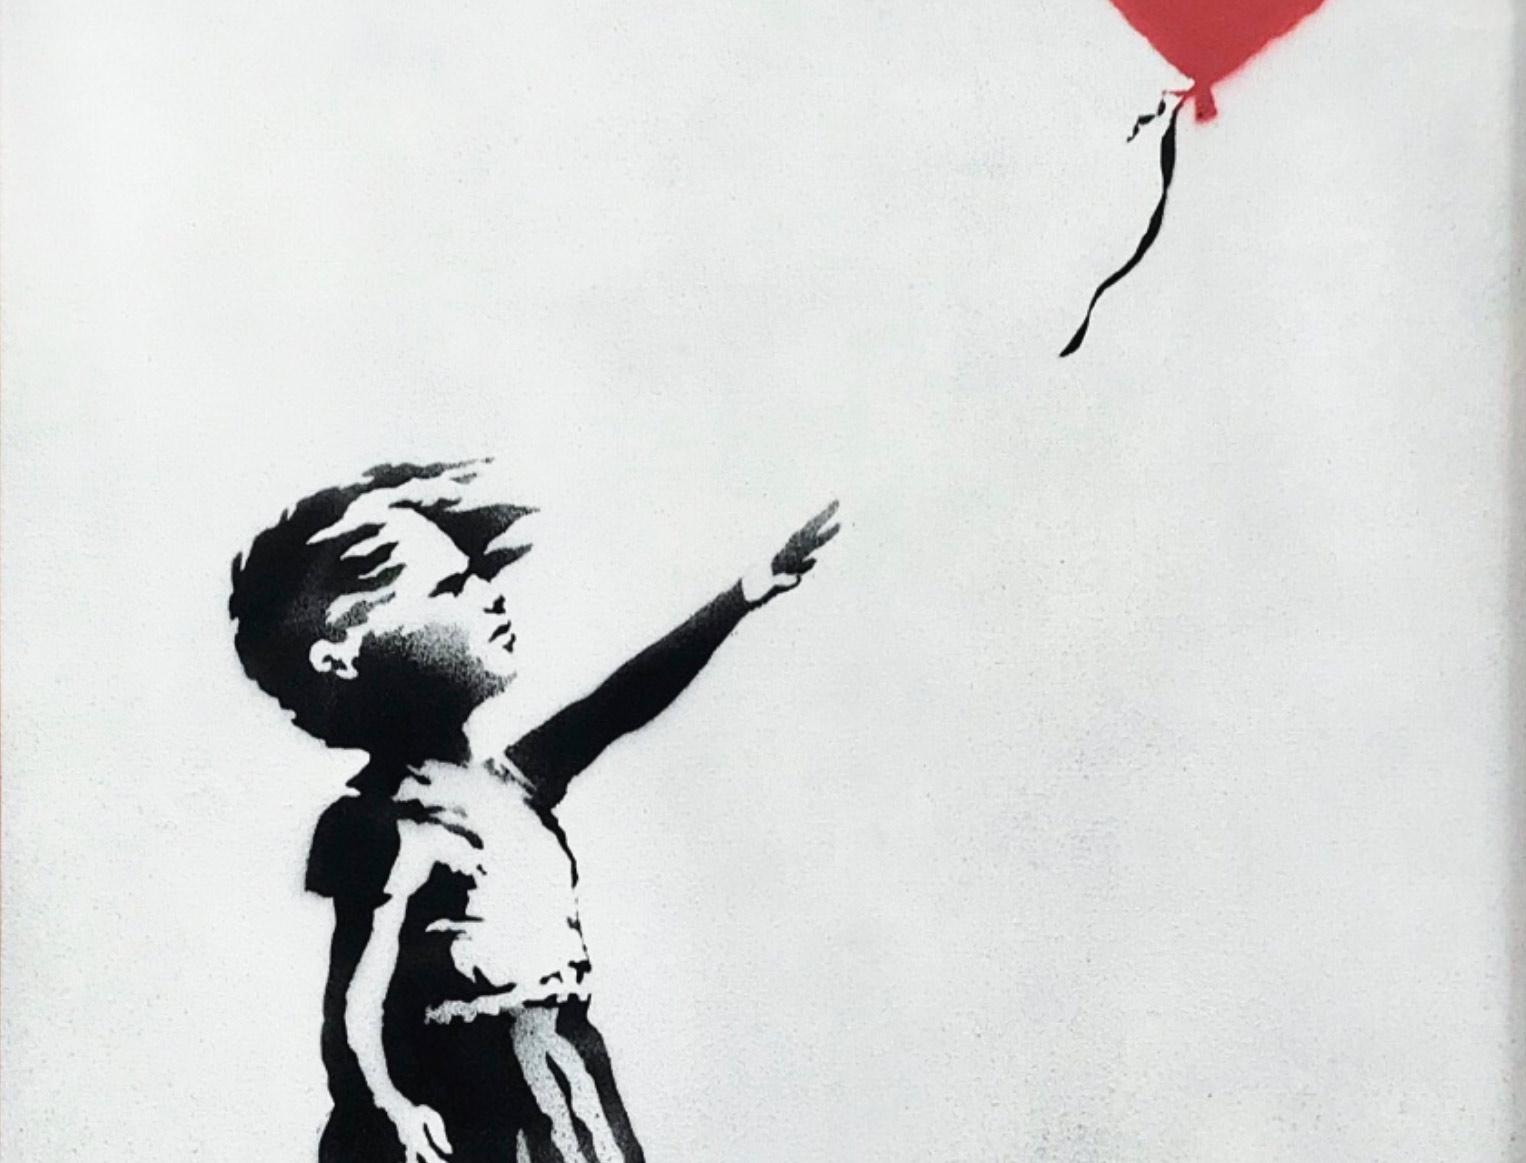 Pintura de Banksy se auto destrói após ser leiloada por £ 1 milhão